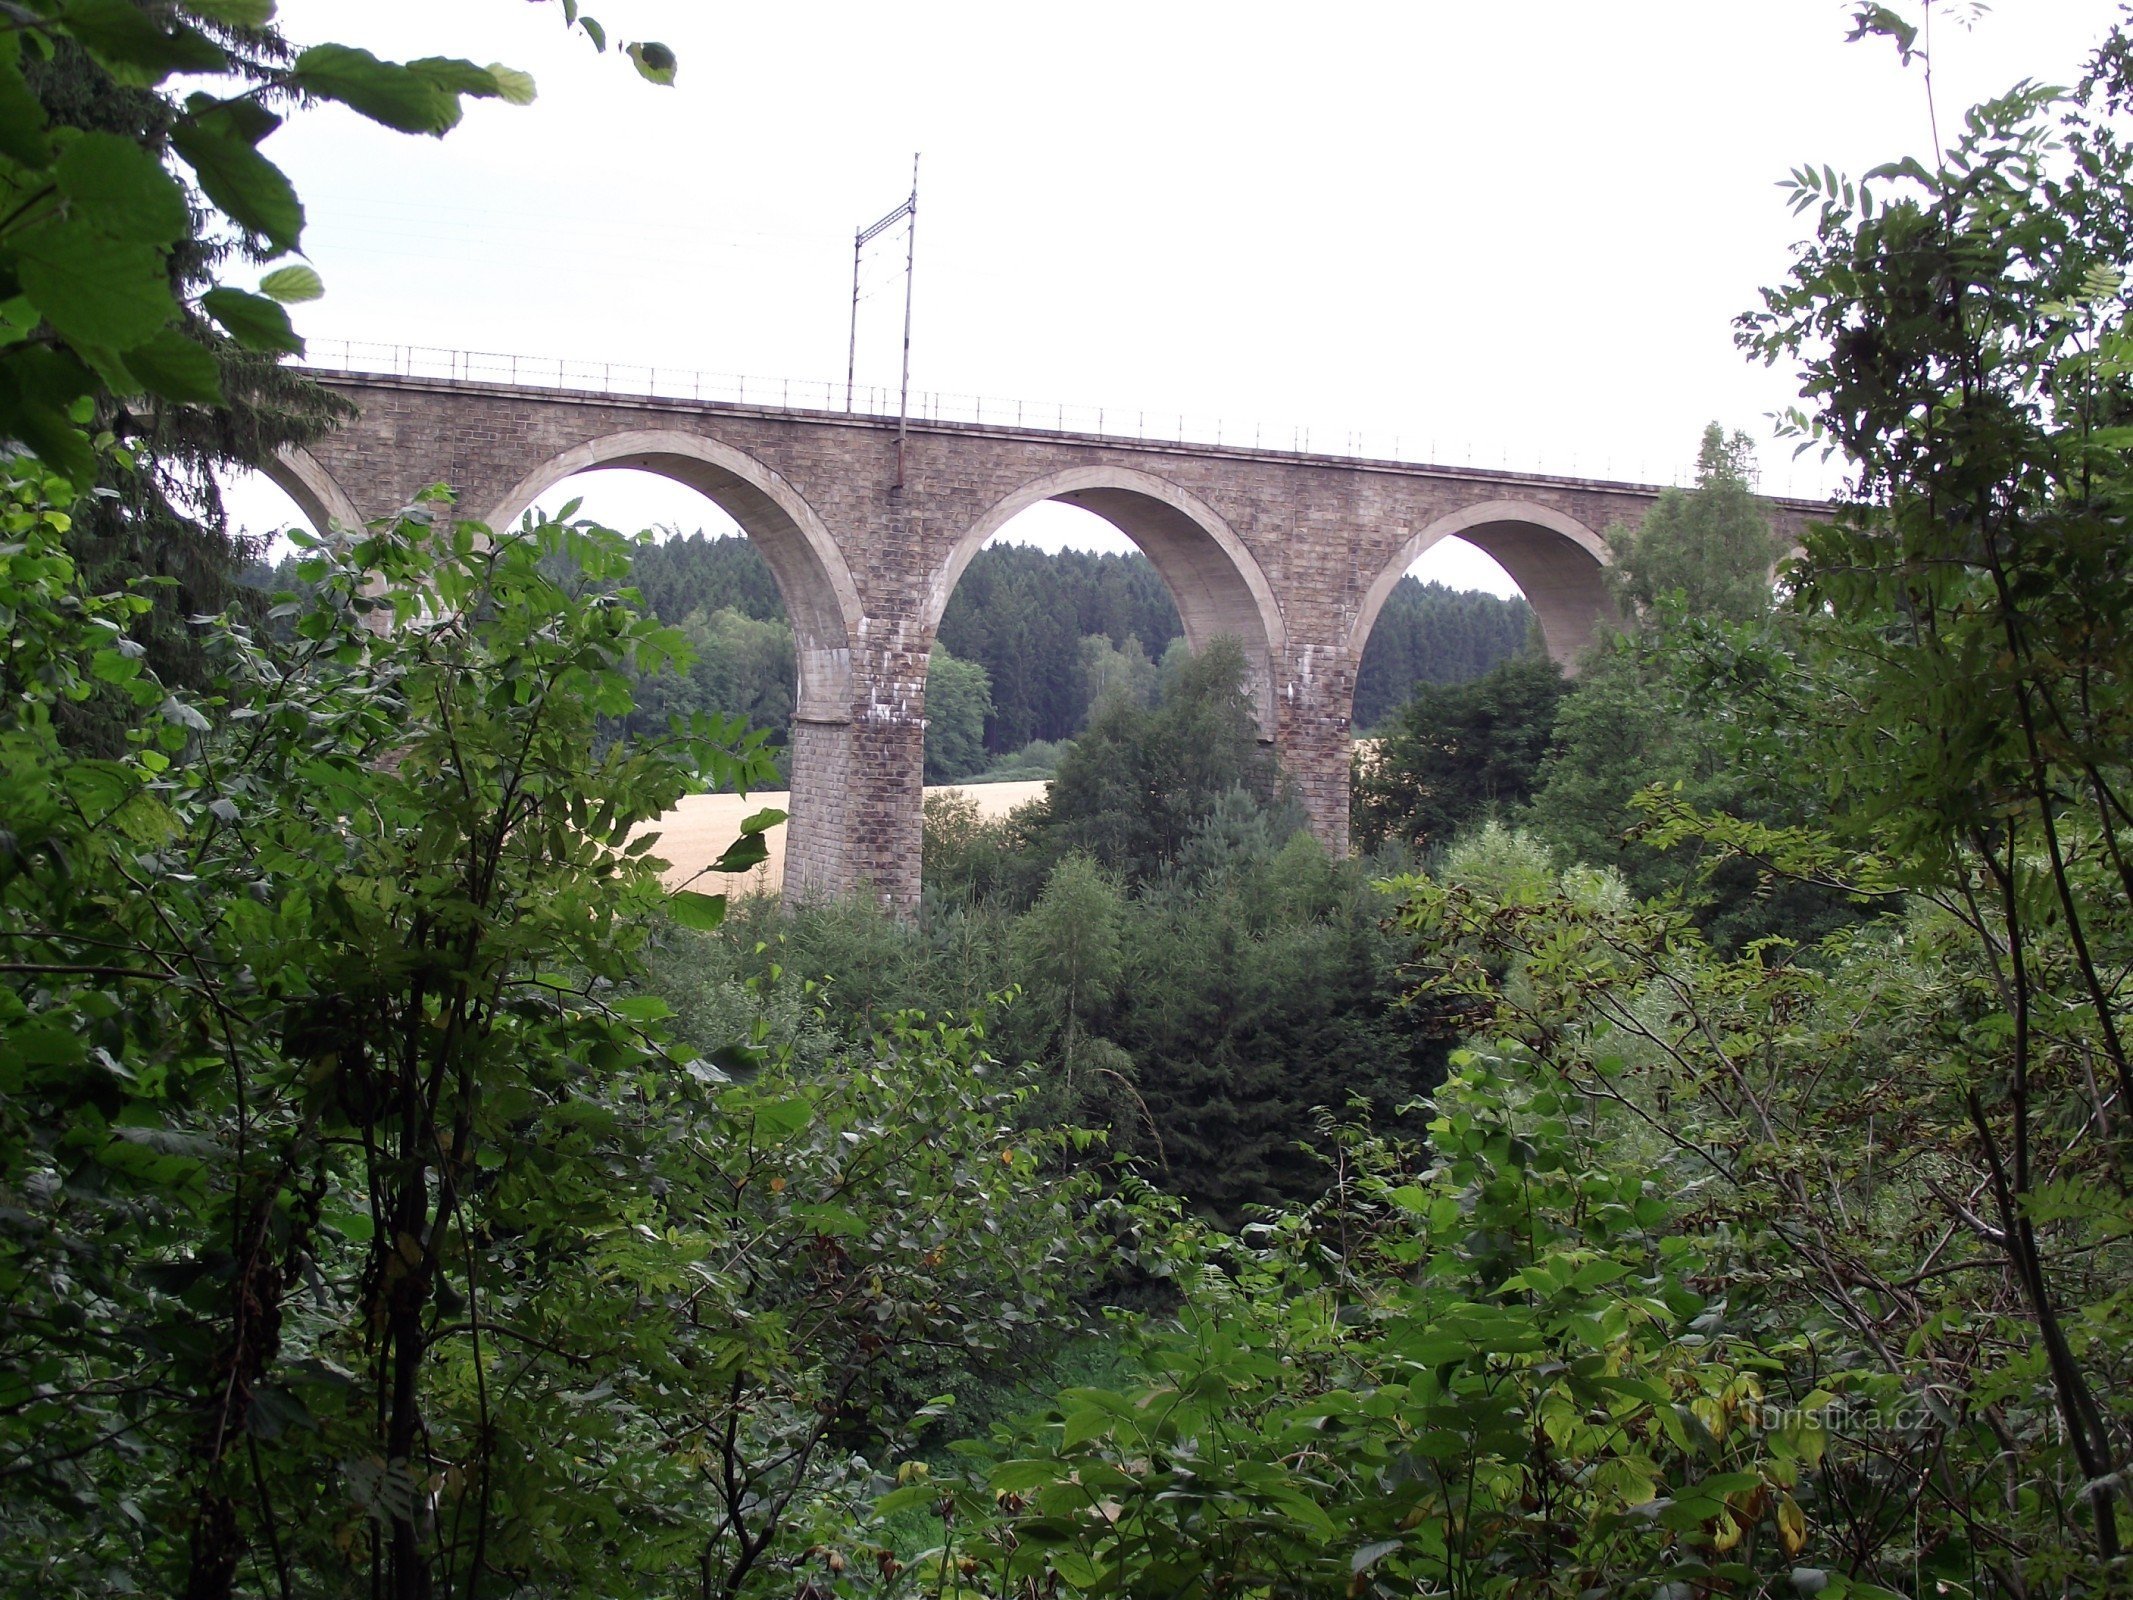 pogled na viadukt